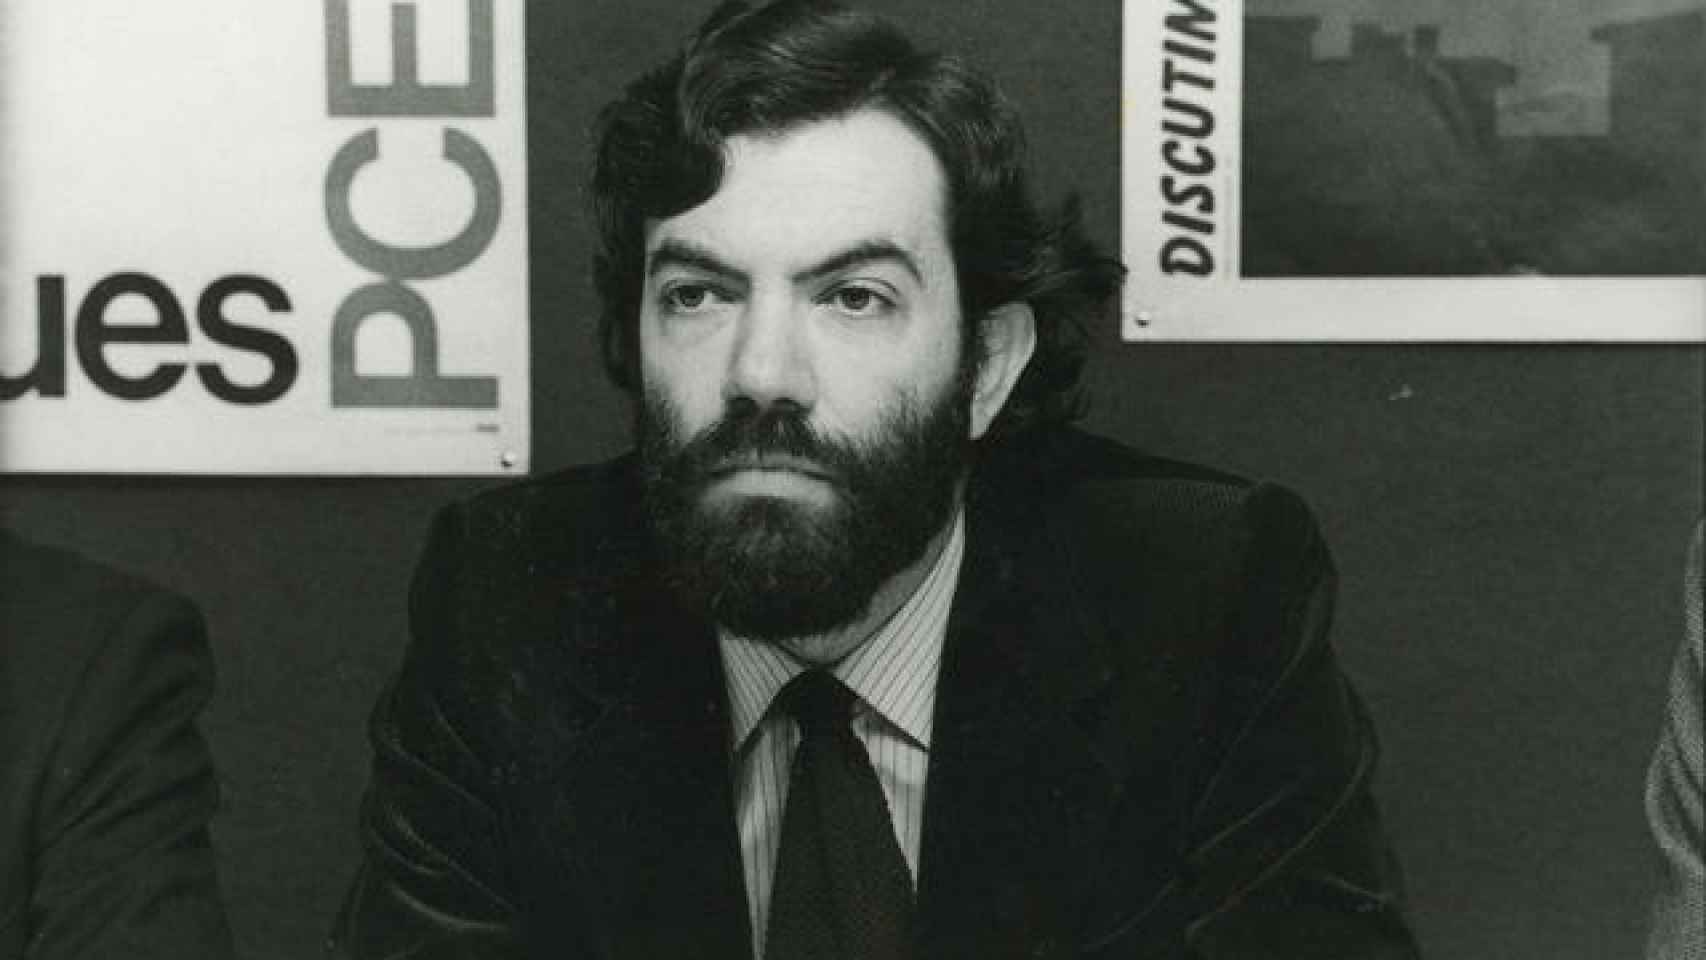 Adolfo Pastor, padre de María Pastor -candidata de Errejón-, en su época de candidato a alcalde de Madrid por el PCE.